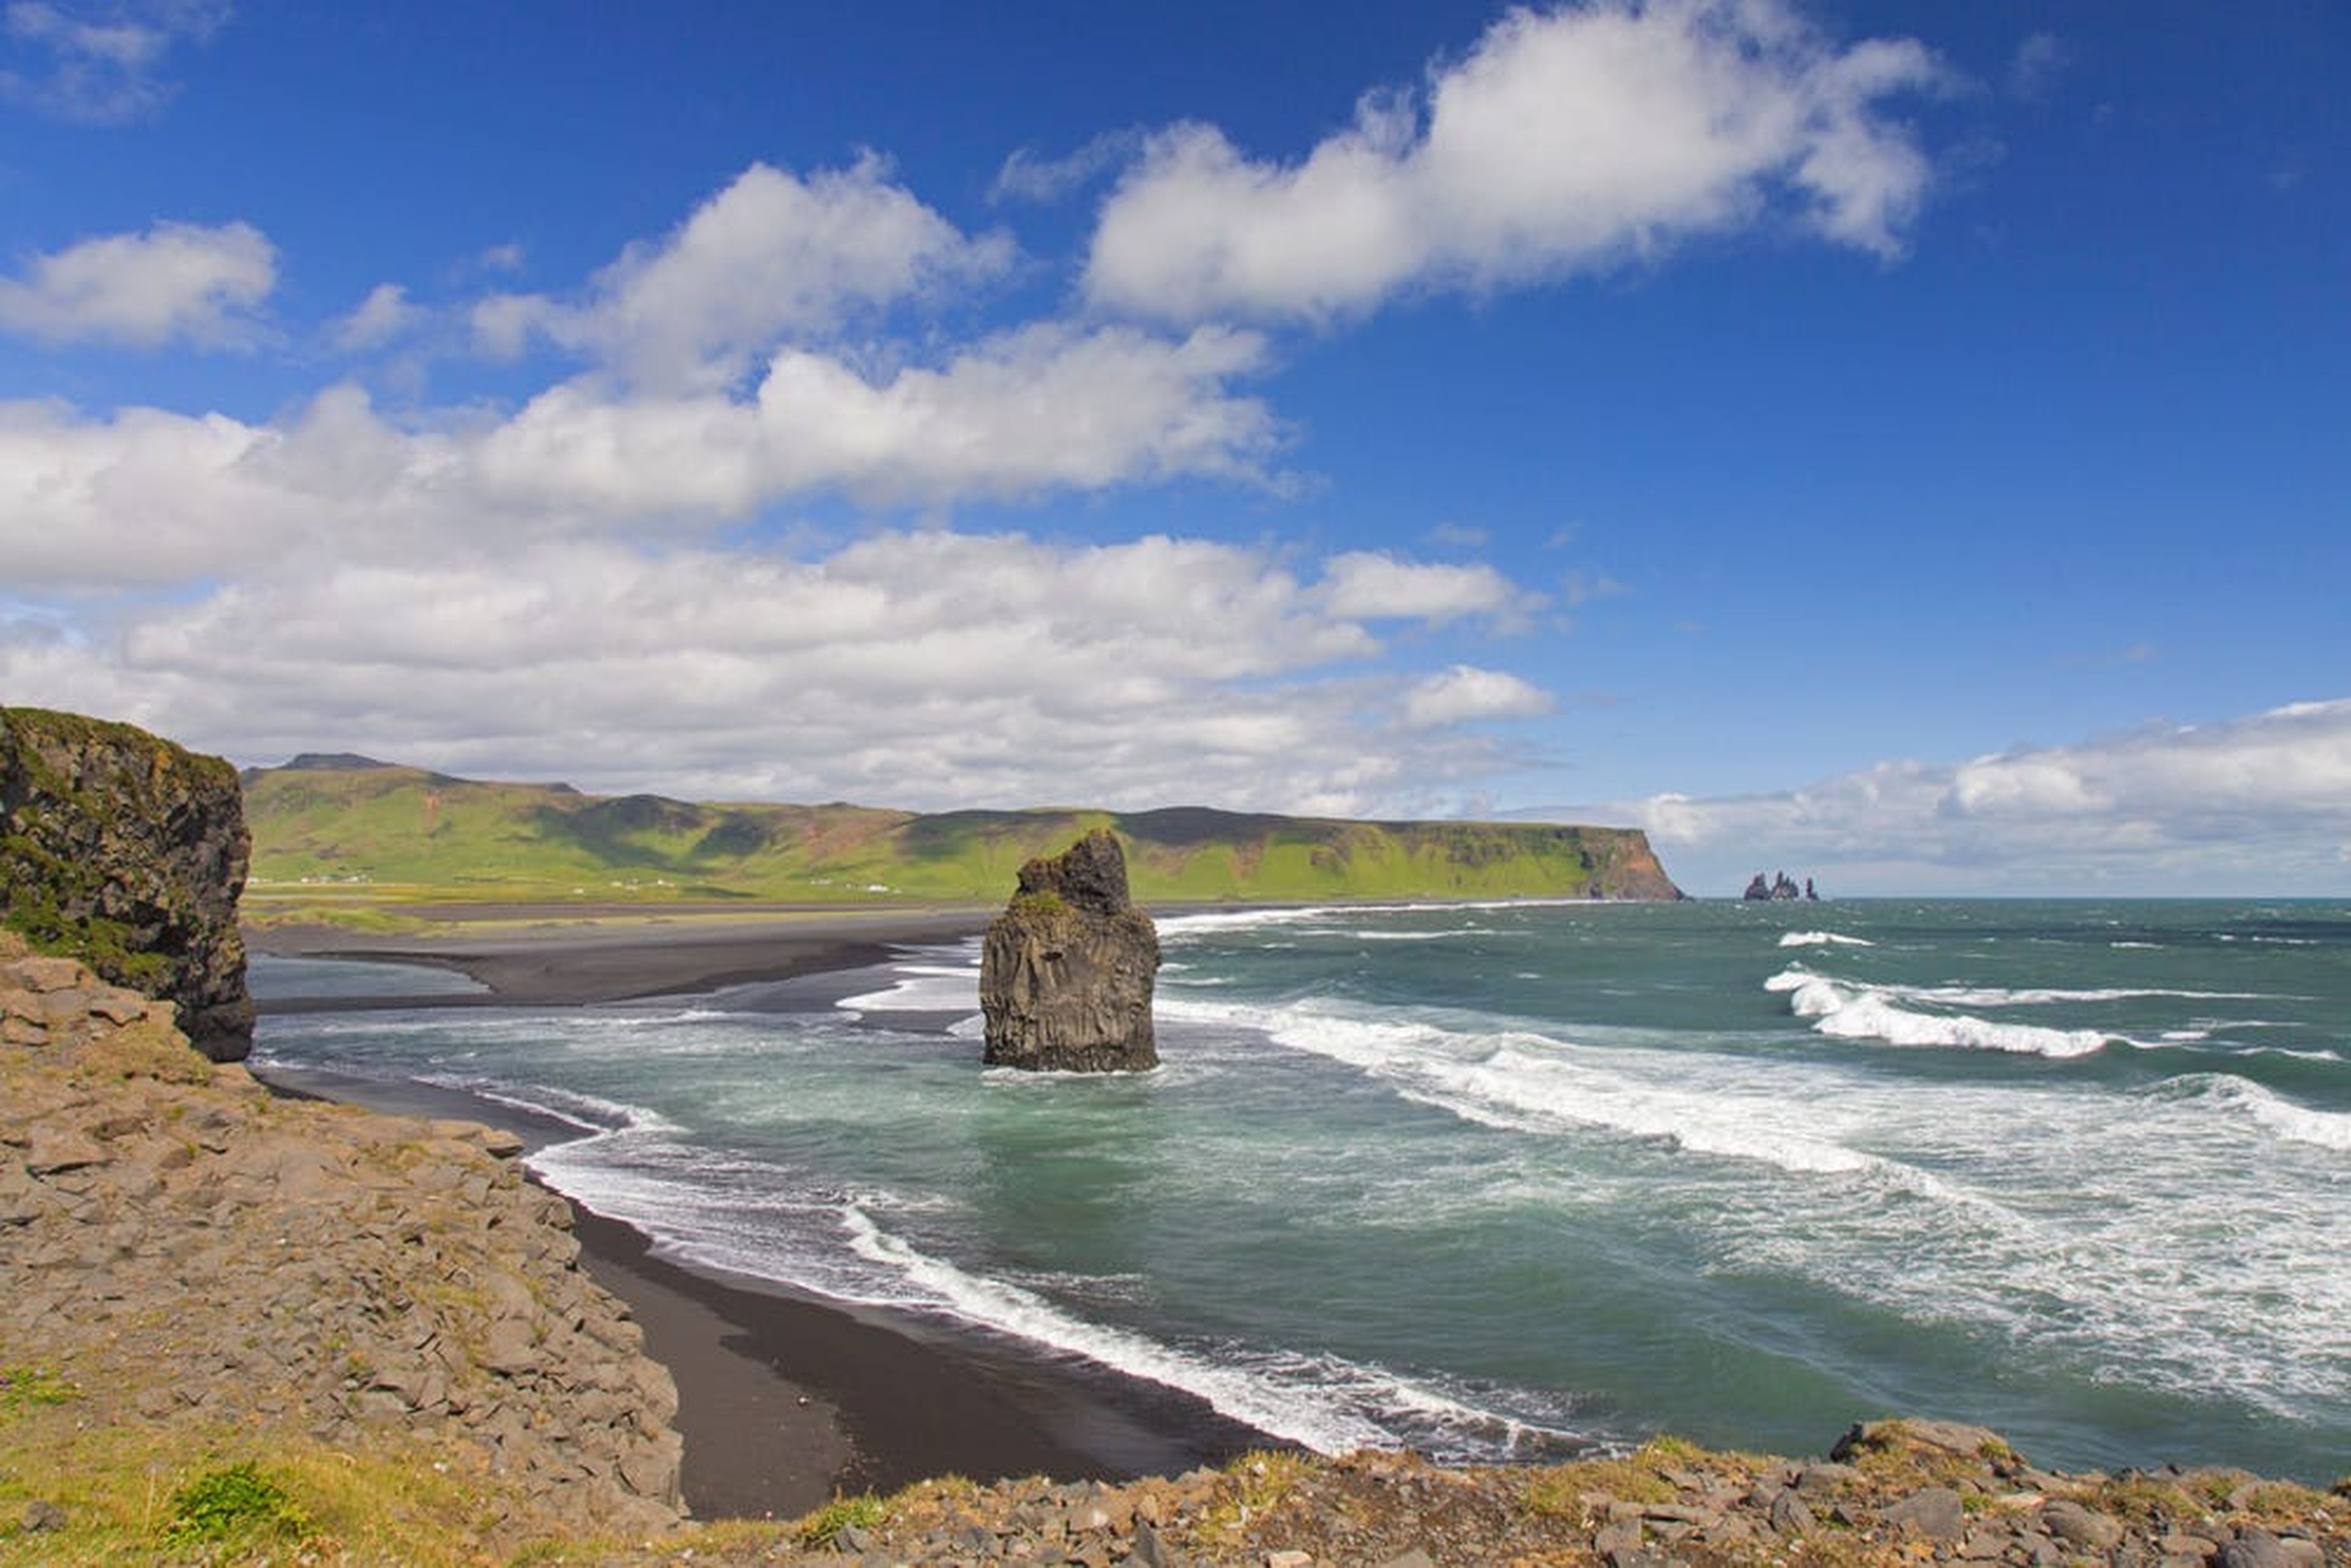 Eagle rock, pila de mar de basalto en la playa de arena negra Reynisfjara cerca de Vík í Mýrdal